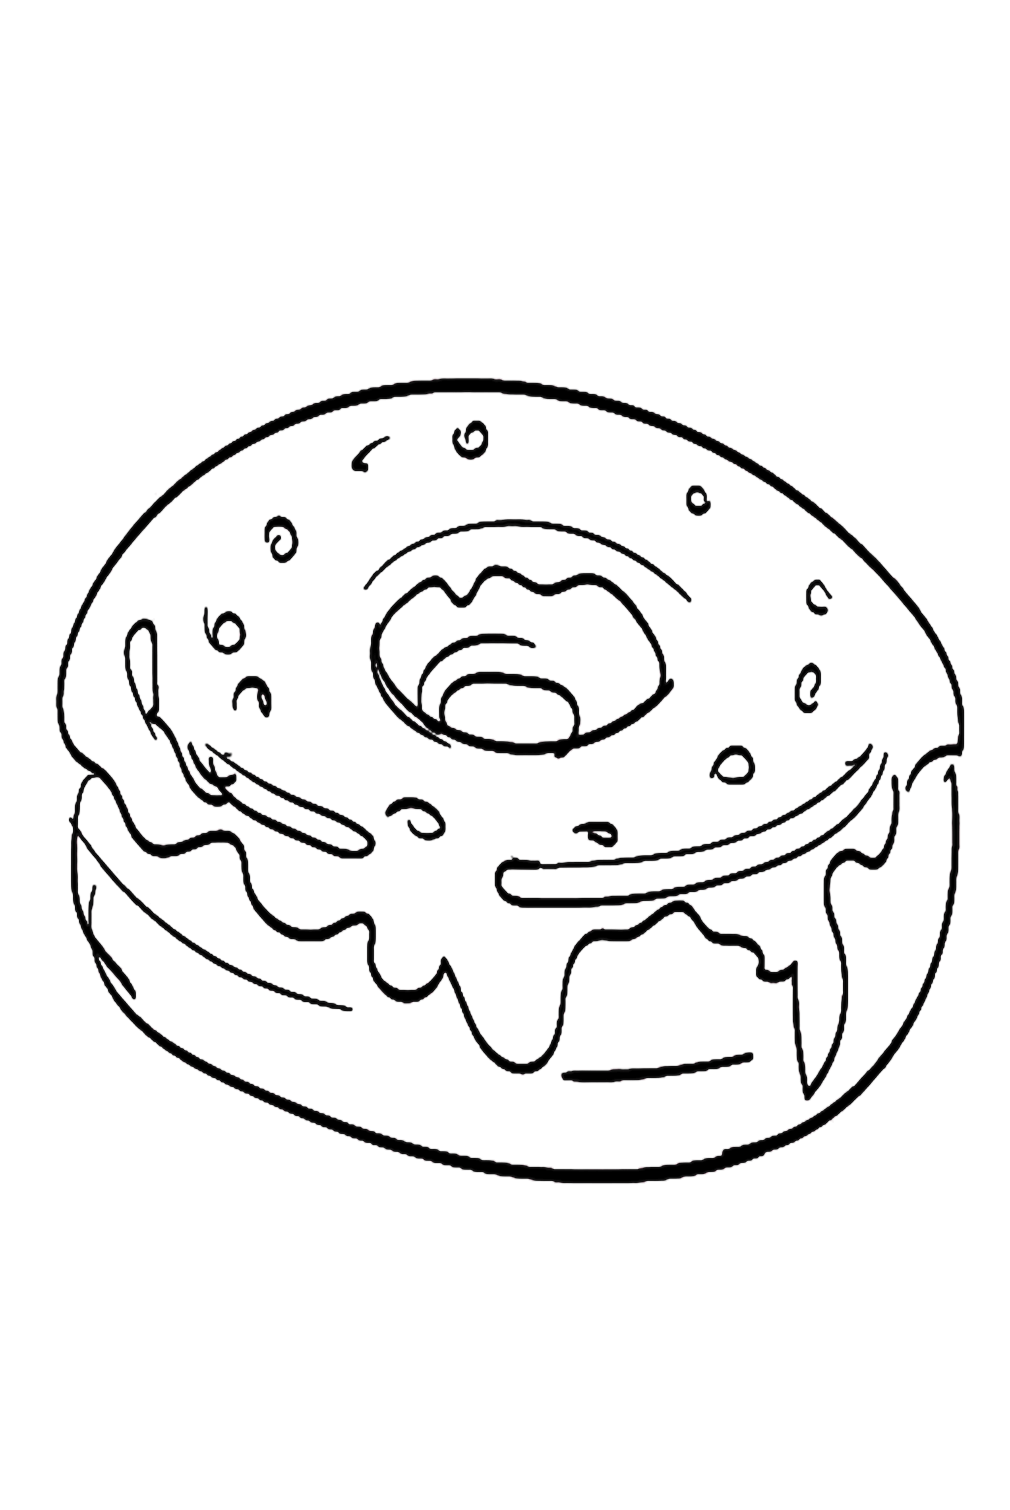 Imágenes de donuts para colorear de Donut